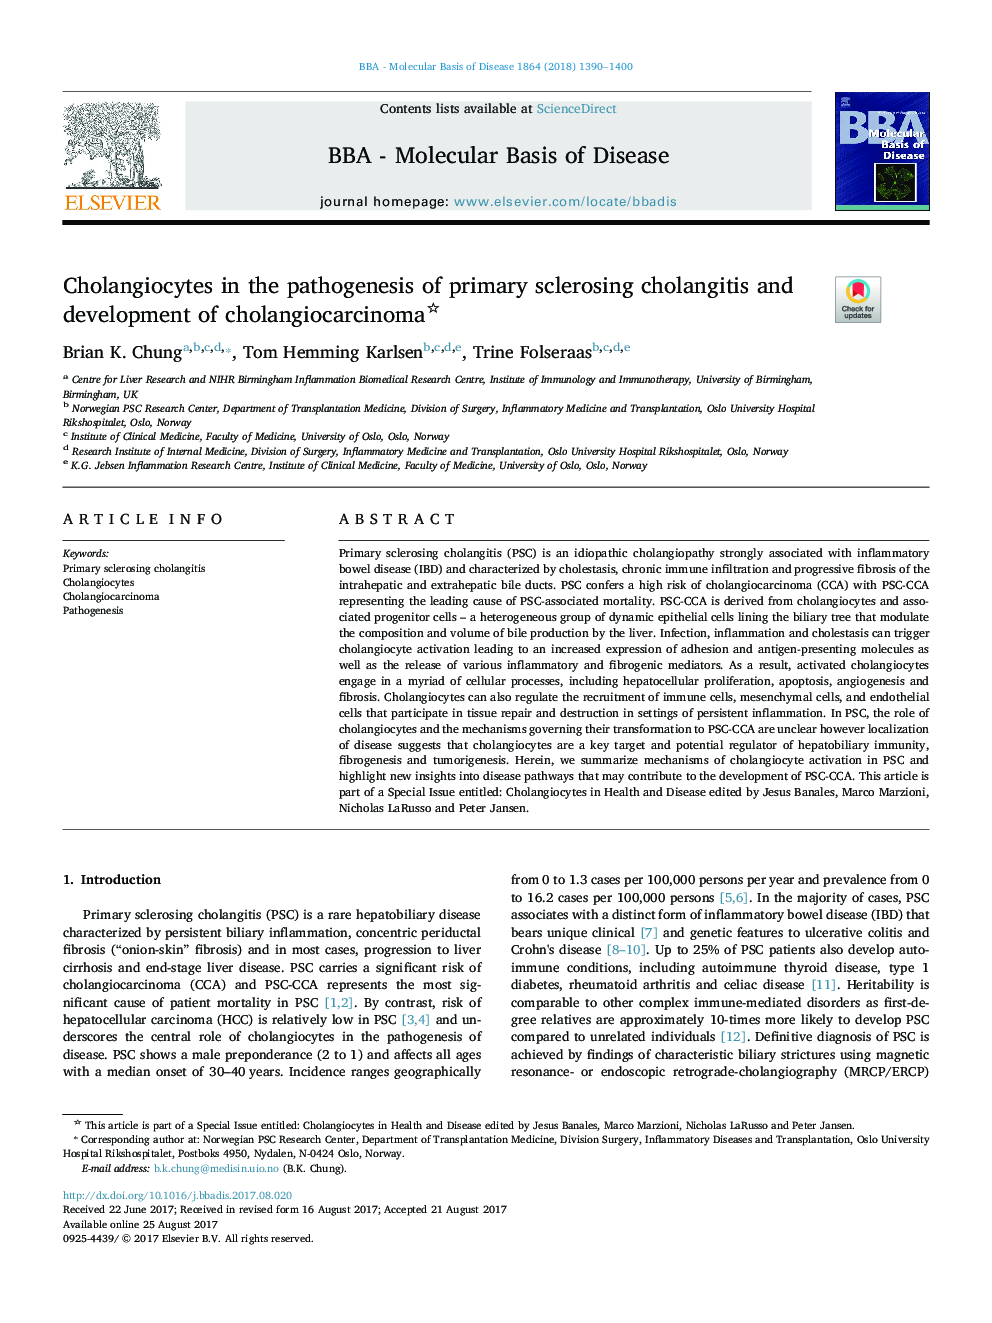 Cholangiocytes in the pathogenesis of primary sclerosing cholangitis and development of cholangiocarcinoma